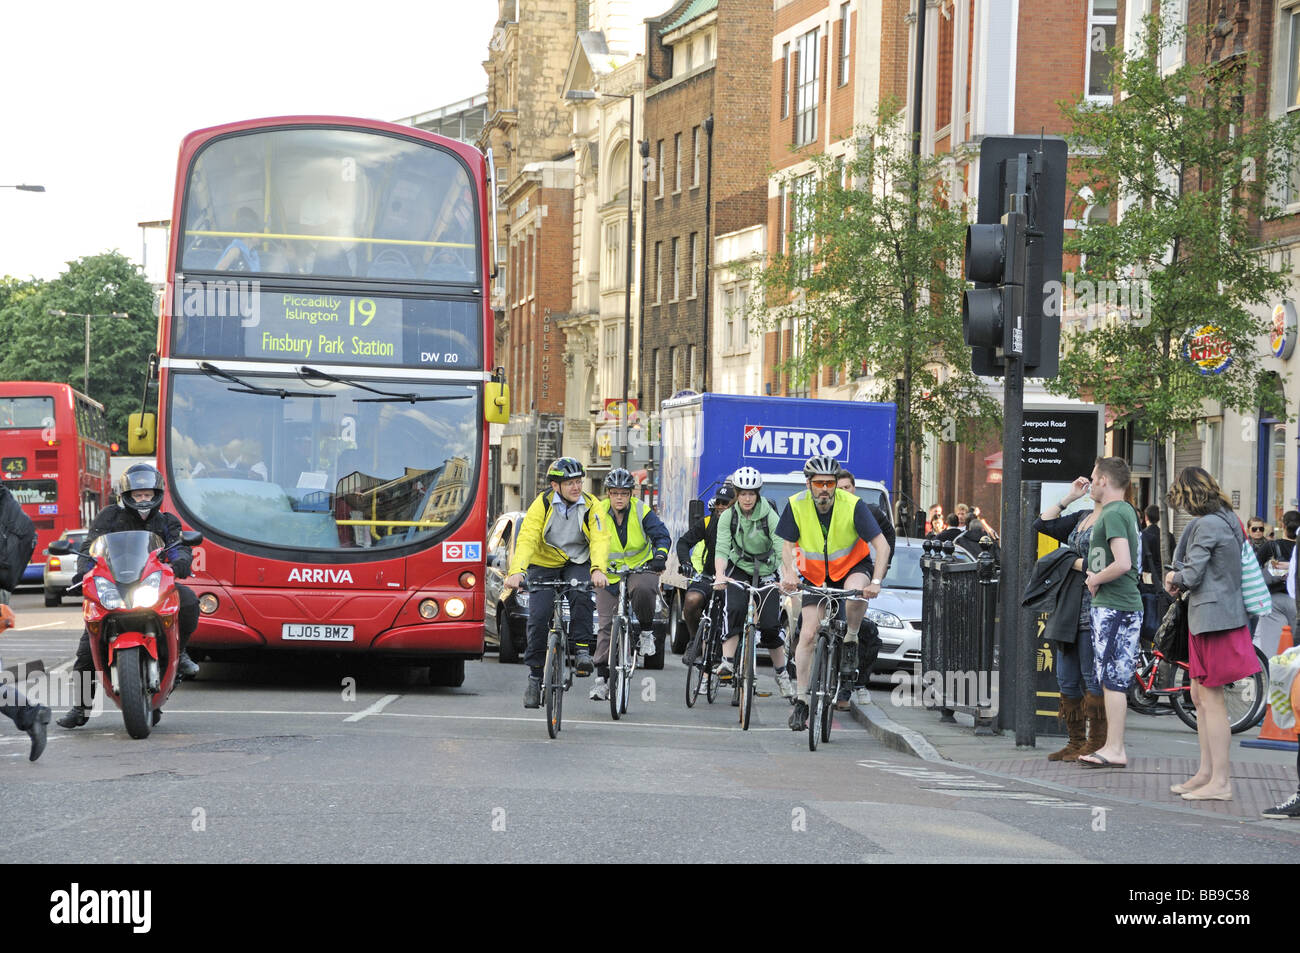 Les cyclistes et bus à l'heure de pointe Angel Islington Londres Angleterre Royaume-uni Banque D'Images